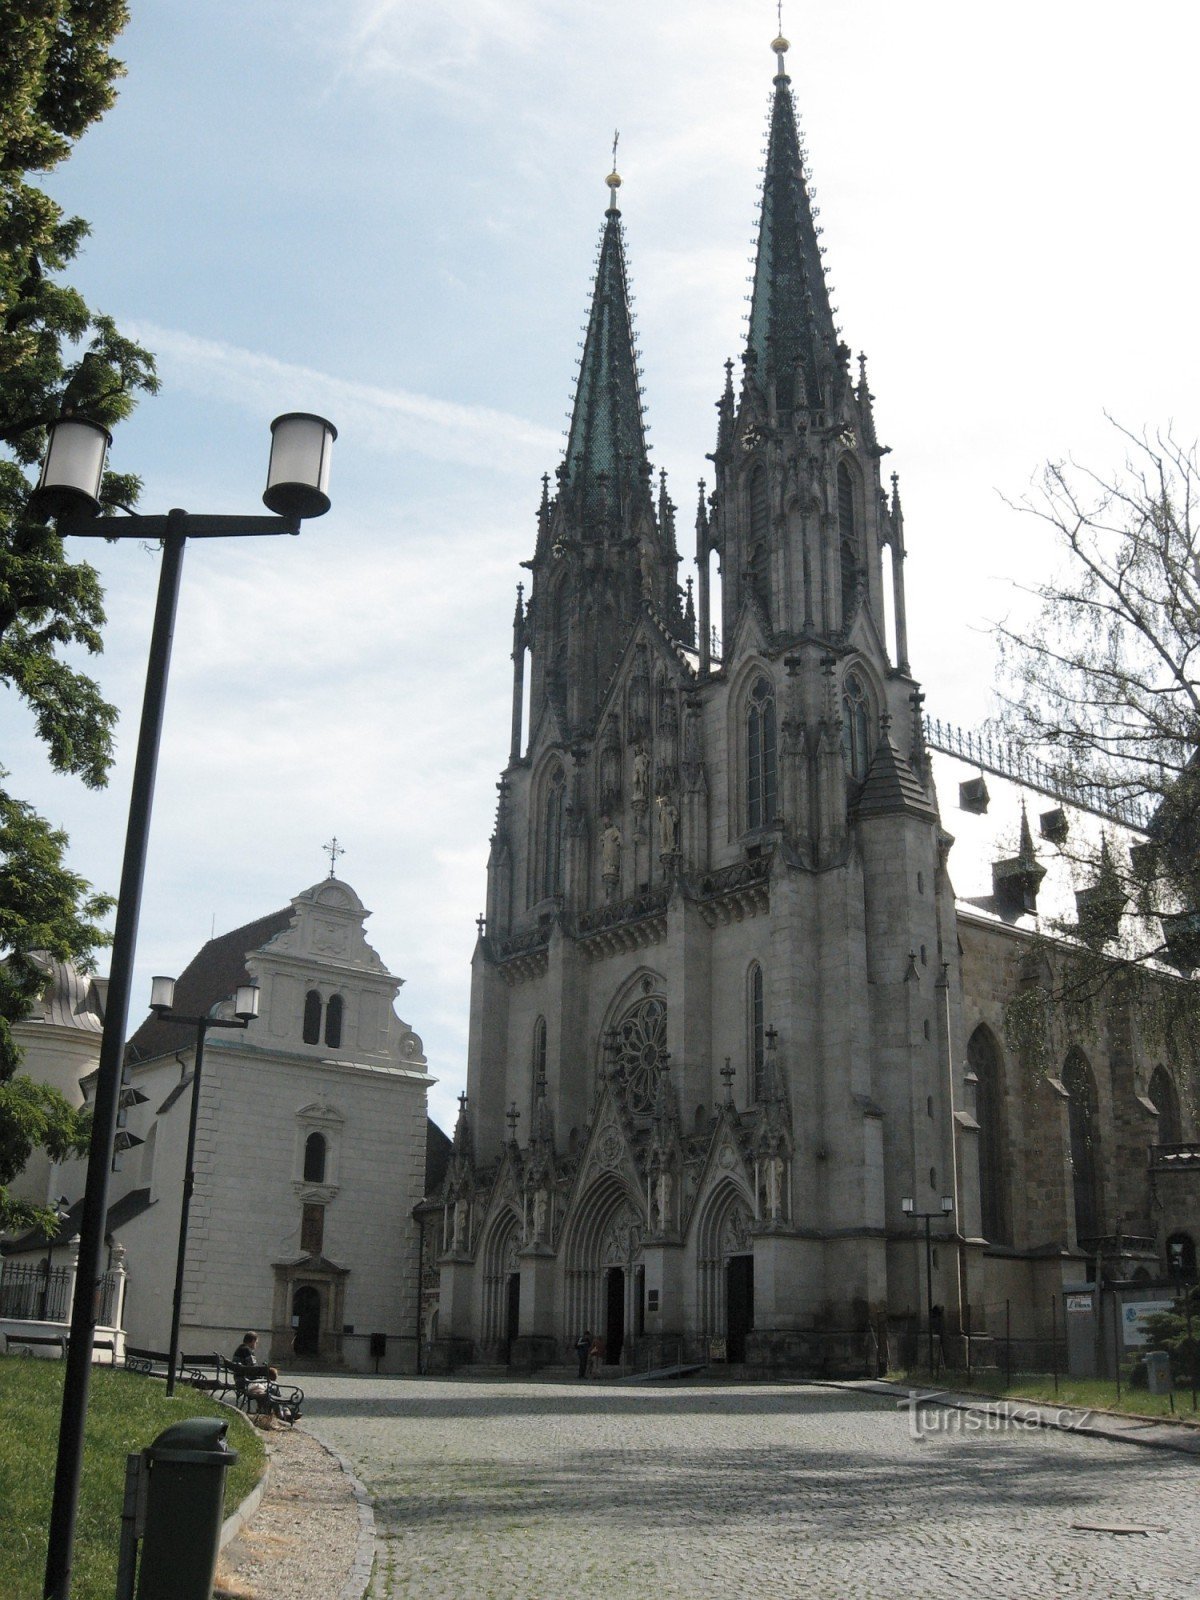 Đến Olomouc không chỉ vì những di tích lịch sử 2008